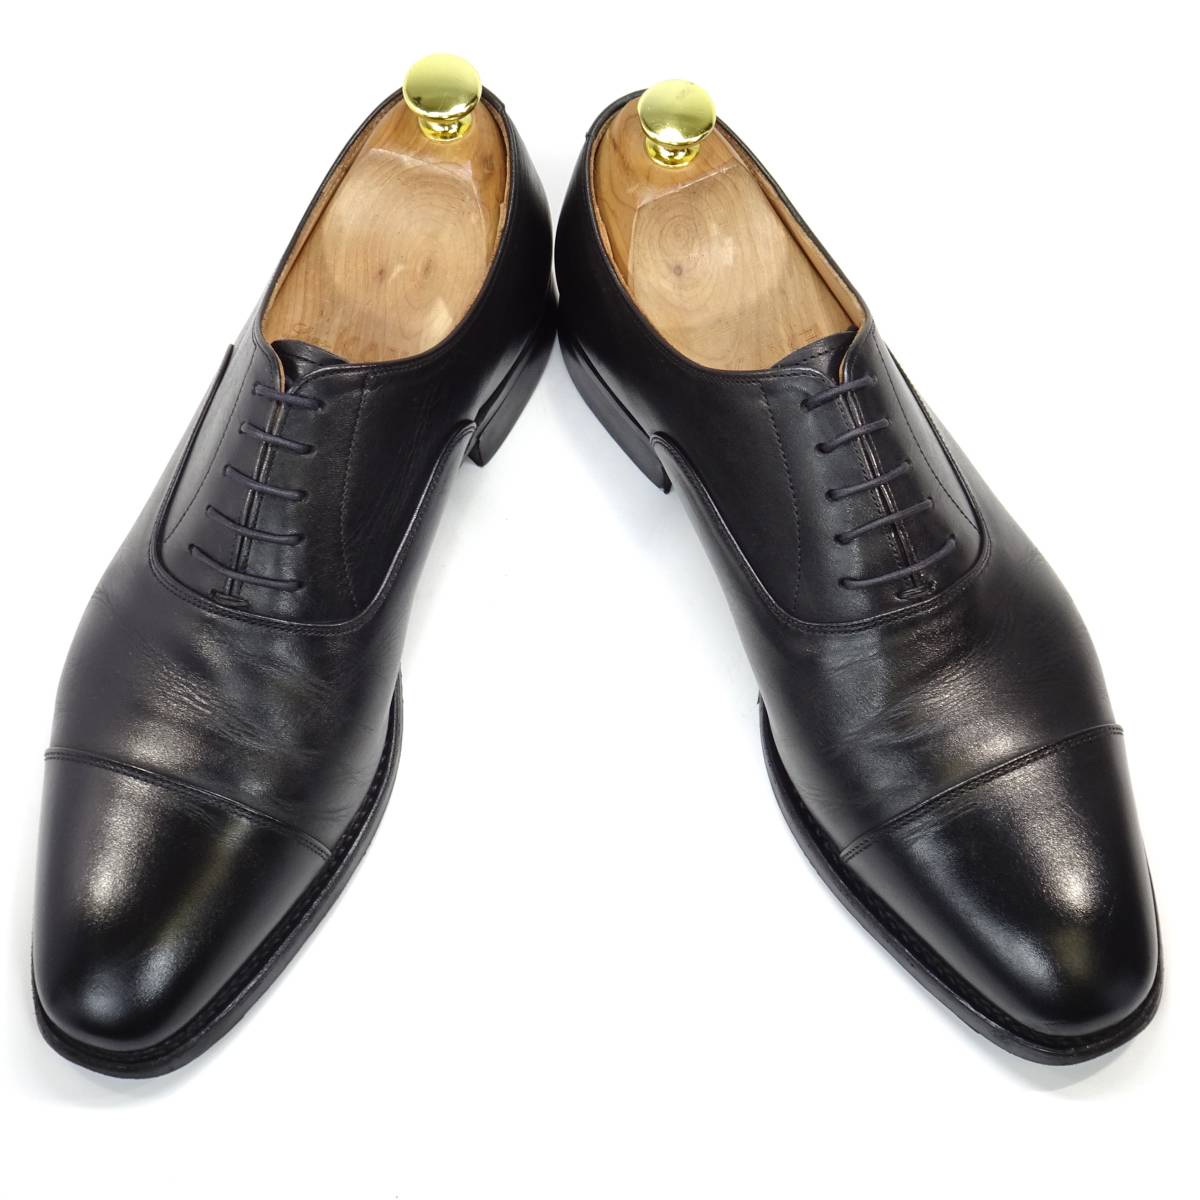 即決 SCOTCH GRAIN 25.5cm ストレートチップ スコッチグレイン メンズ 黒 ブラック 本革 ビジネスシューズ 本皮 レースアップシューズ 革靴